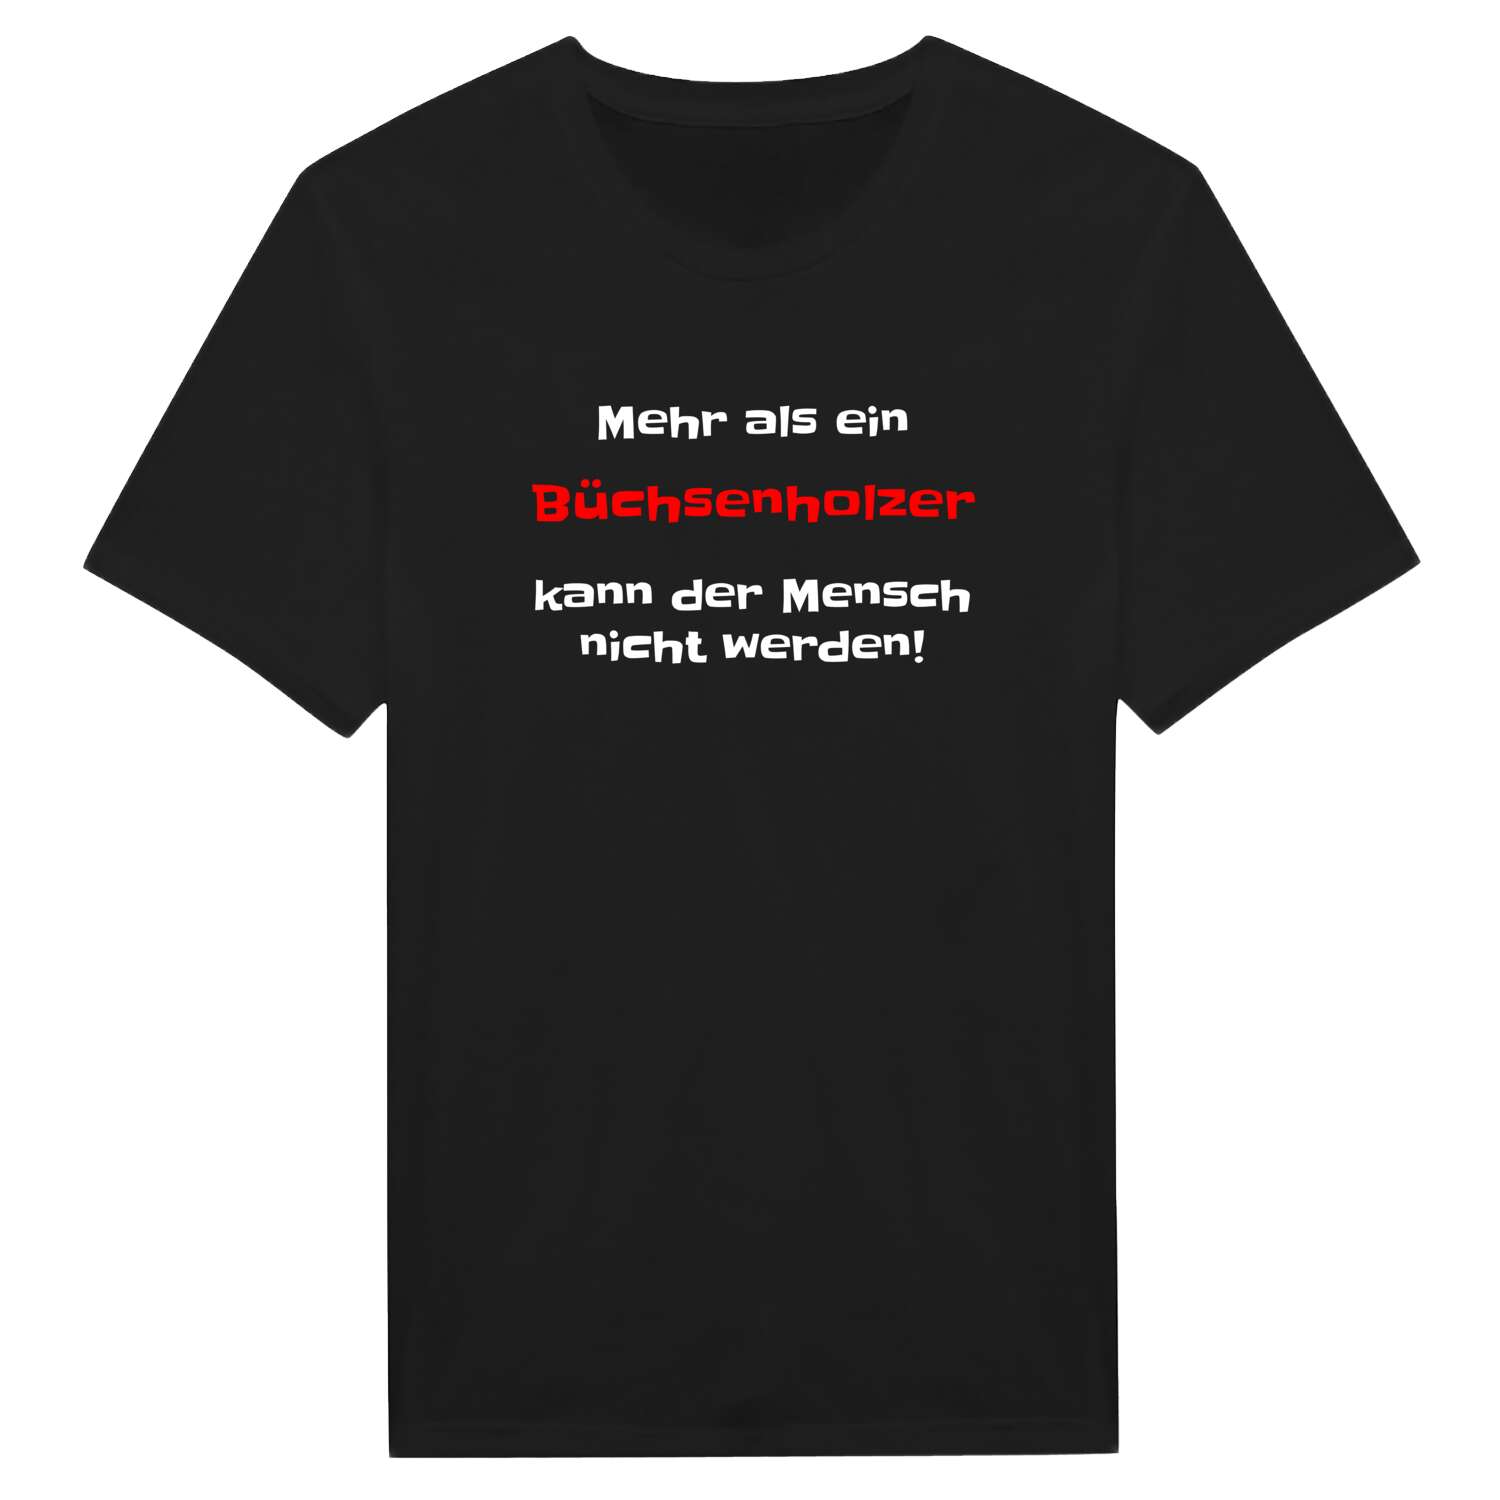 Büchsenholz T-Shirt »Mehr als ein«